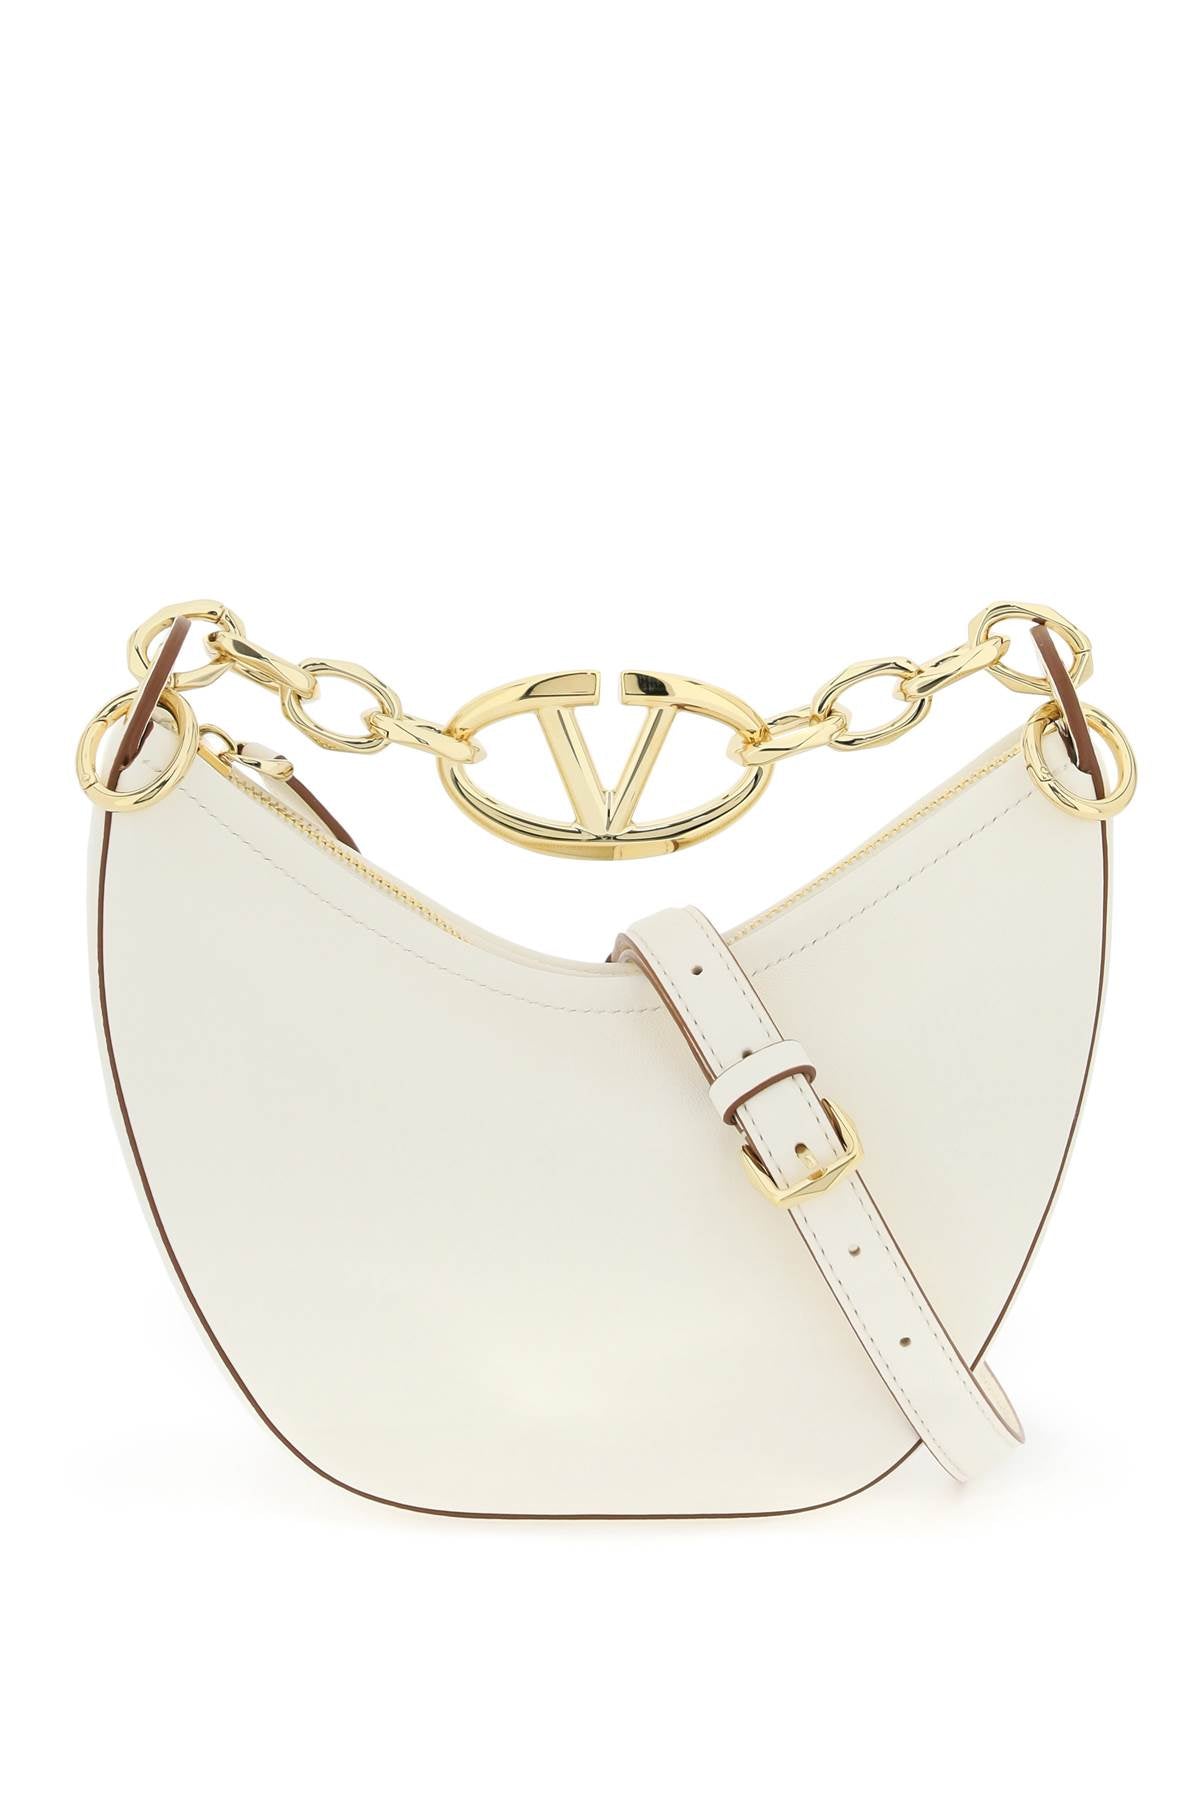 VALENTINO GARAVANI Mini VLogo Moon Nappa Leather Hobo Handbag with Chain Handle - White